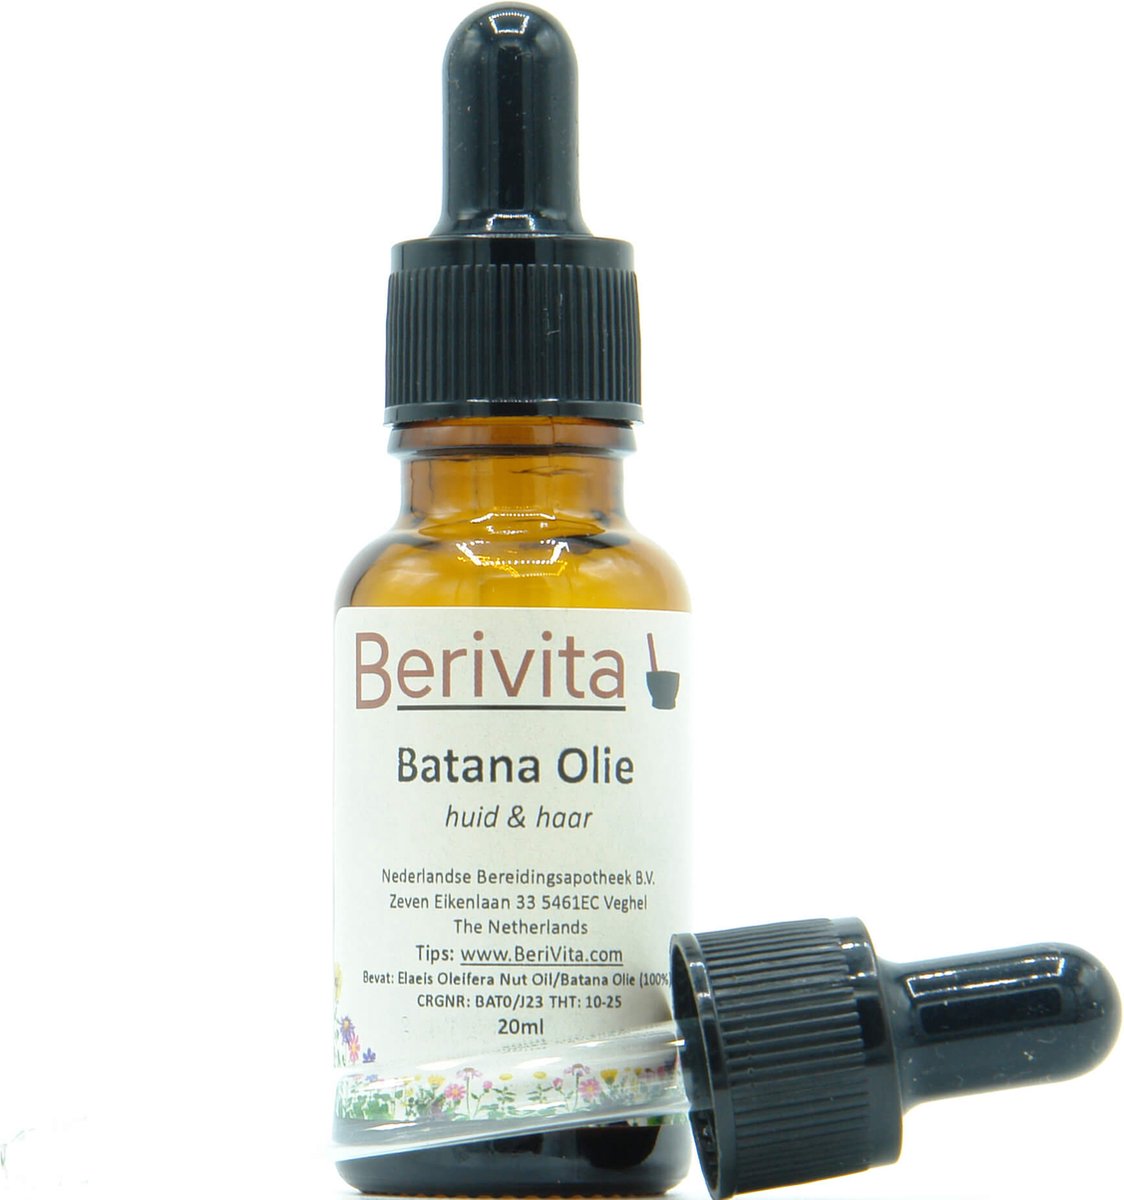 Batana Olie 20ml Pipetfles - 100% Pure Huid en Haarolie van Amerikaanse Palm, Elaeis Oleifera - Batana Oil Koudgeperst en Onbewerkt - Berivita